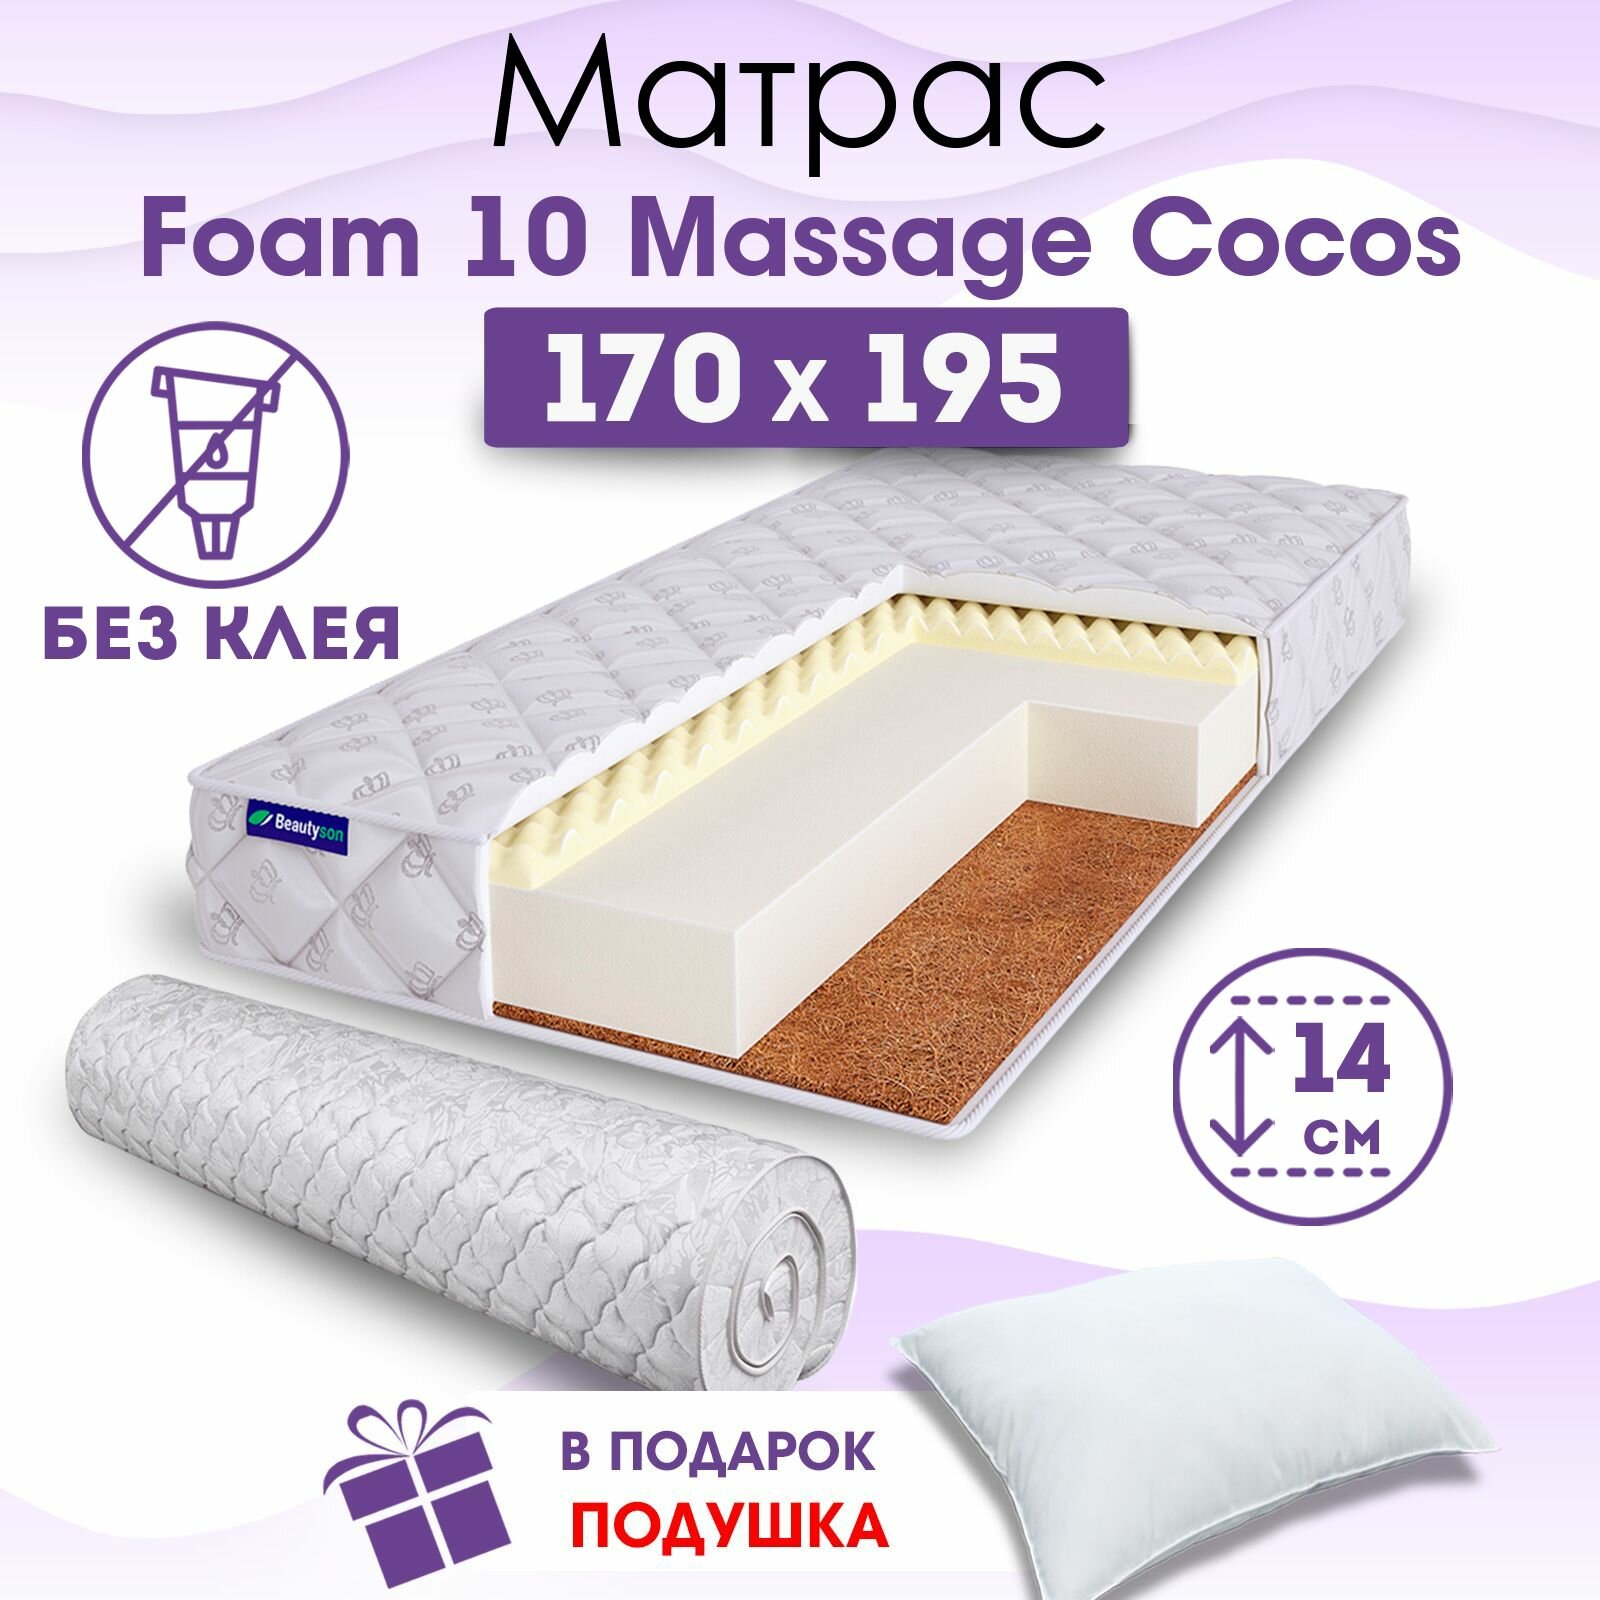 Ортопедический матрас Beautyson Foam 10 Massage Cocos без клея, 170х195, 14 см, беспружинный, двухспальный, на кровать, для дивана, мягкий, не высокий